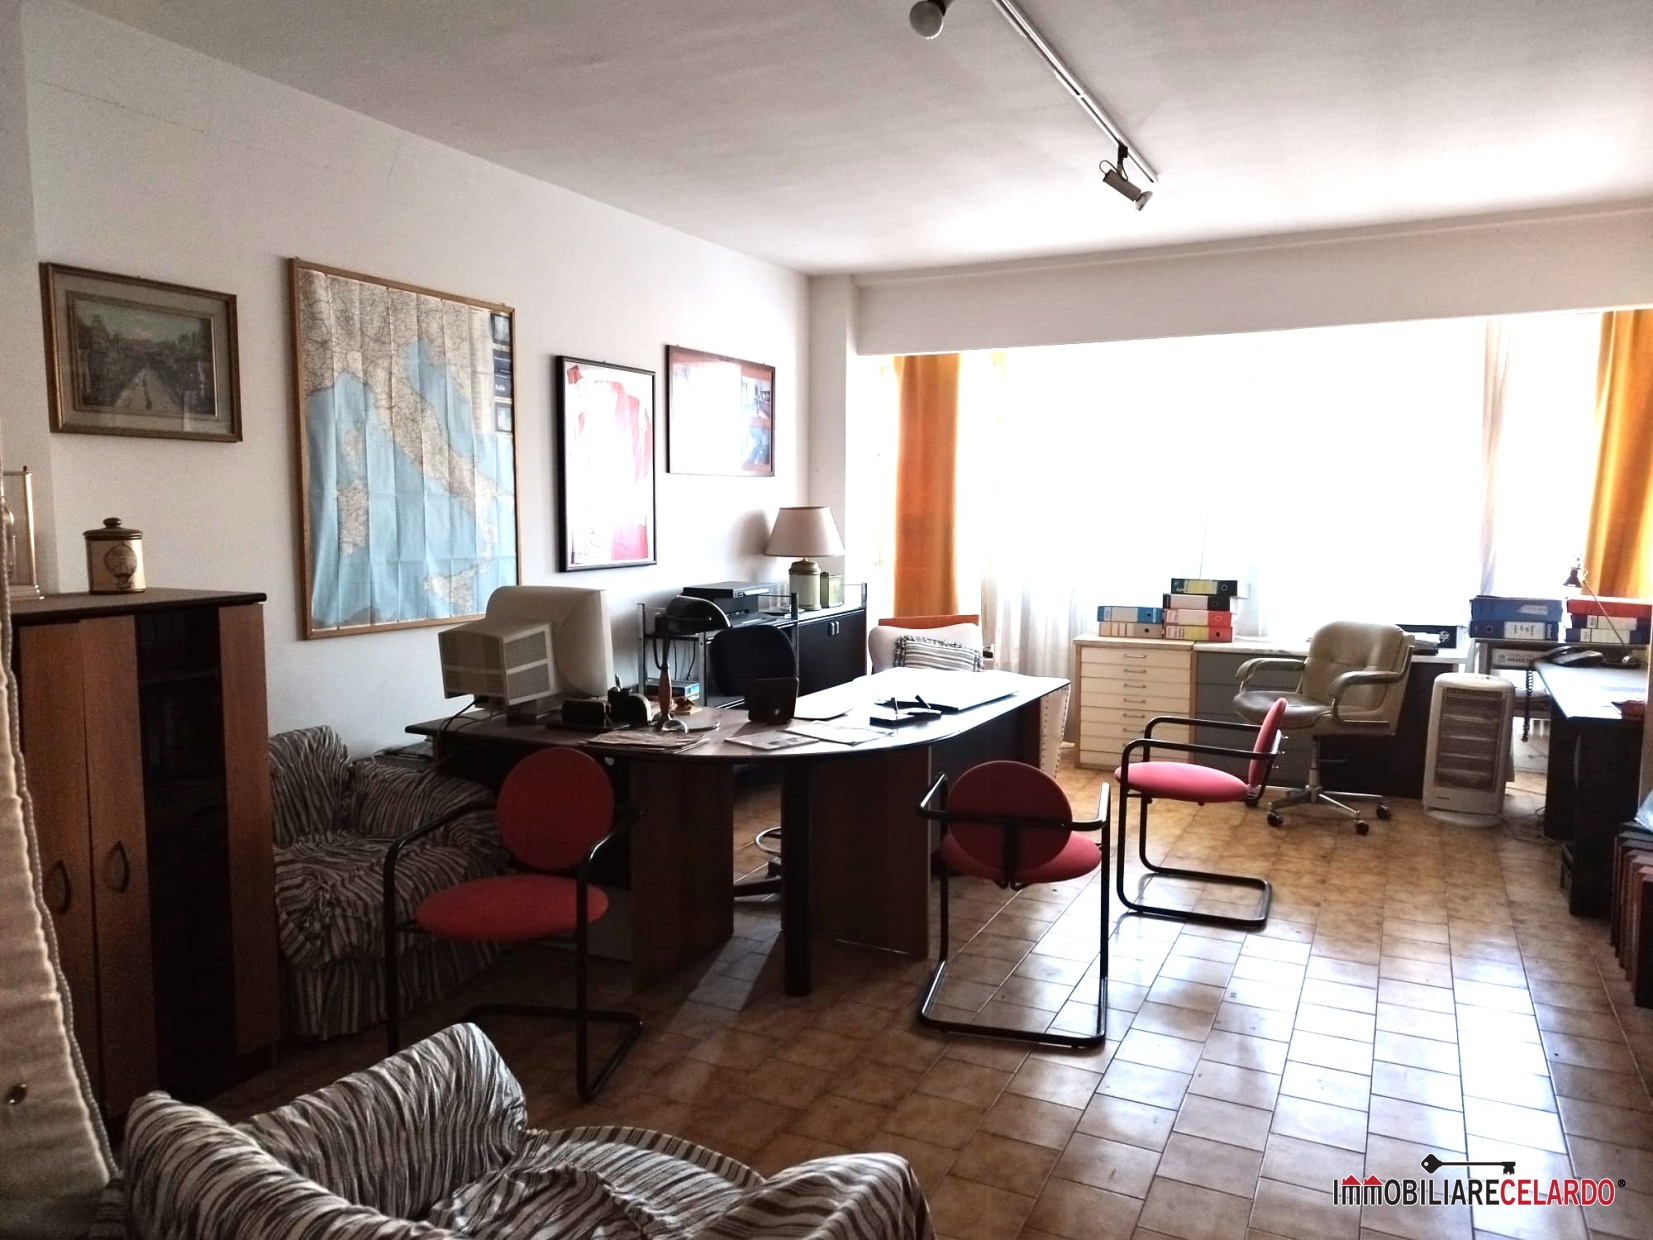 Ufficio / Studio in vendita a Colle di Val d'Elsa, 1 locali, prezzo € 30.000 | PortaleAgenzieImmobiliari.it